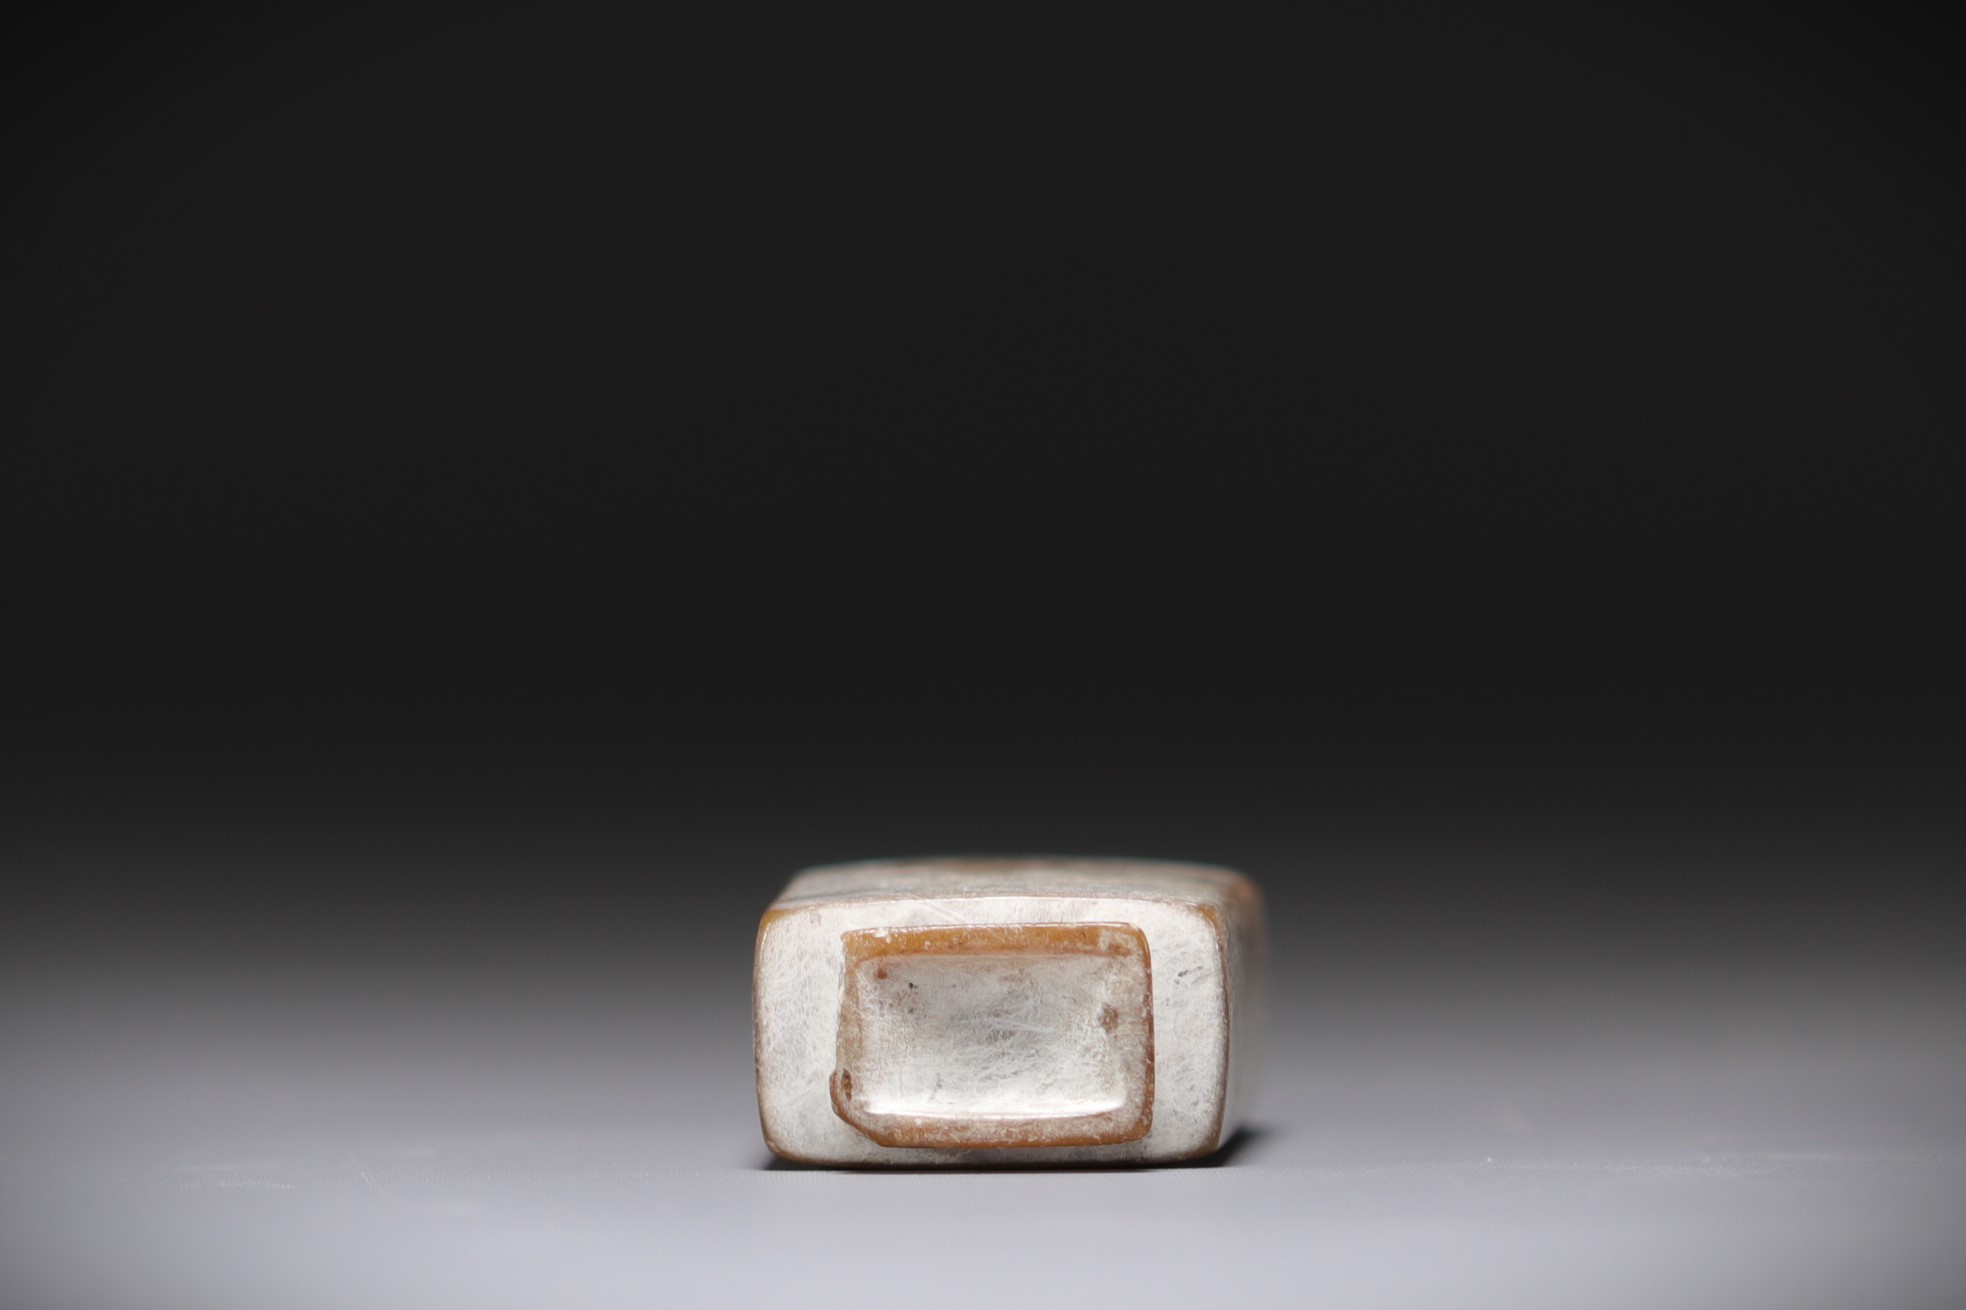 China - "Chicken bone" jade snuffbox - Image 4 of 4